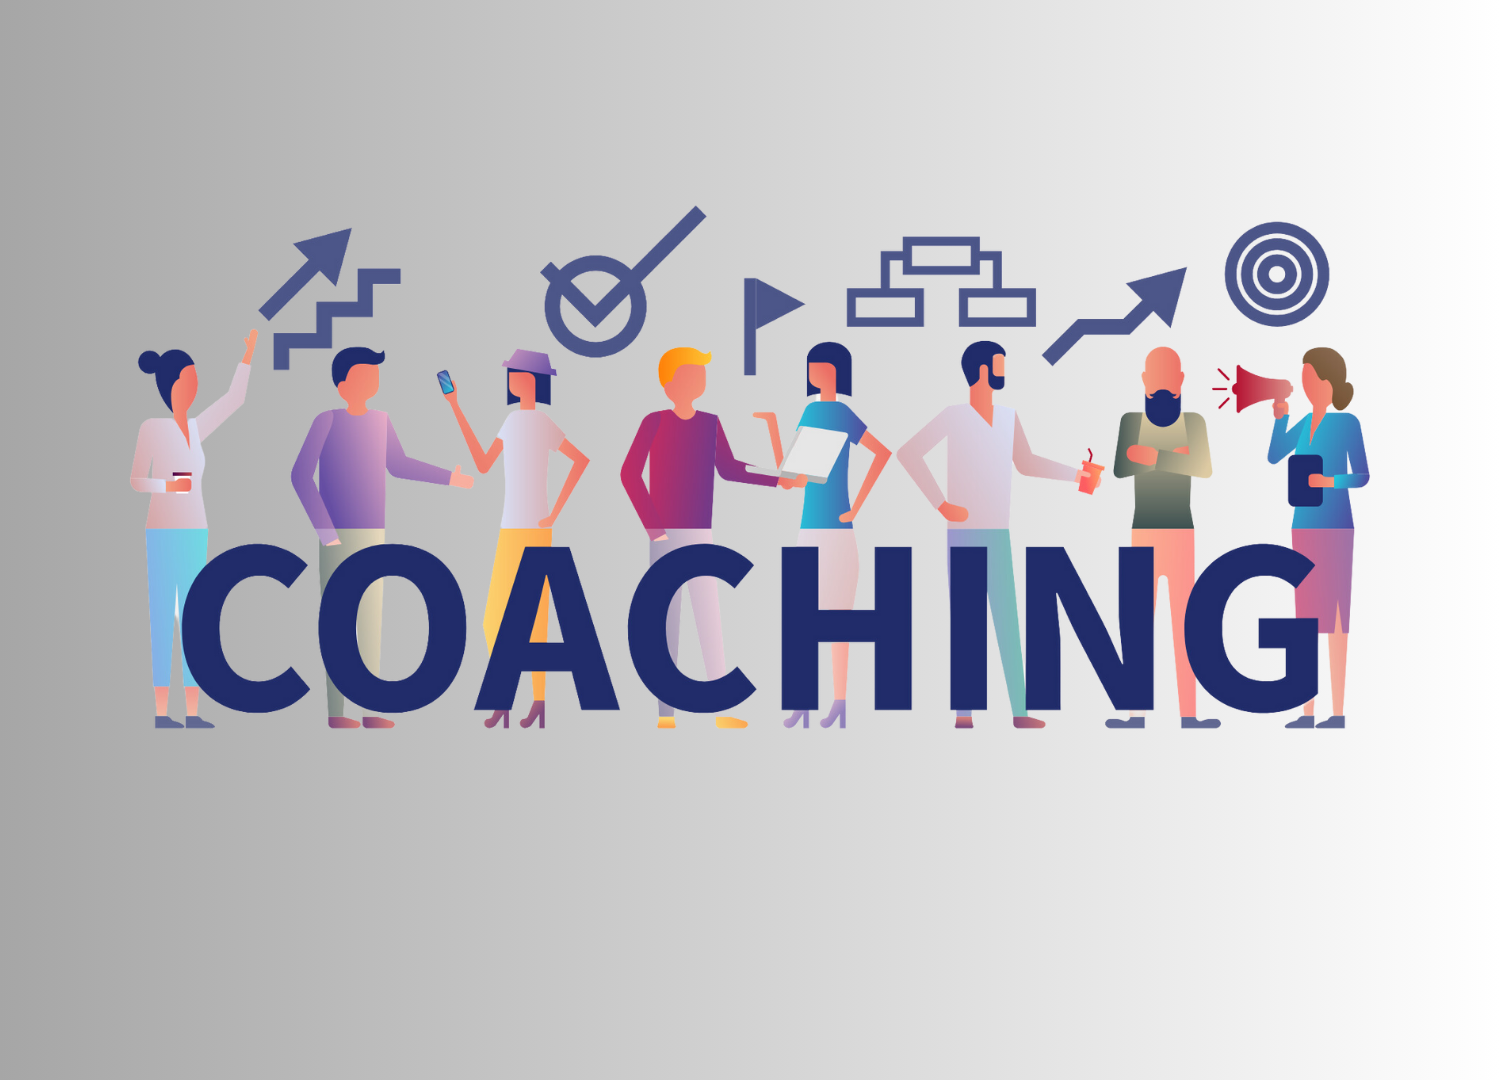 CONSCIOUS LEDER INSTITUTE - Coaching: Transformação e Realização Pessoal e Profissional